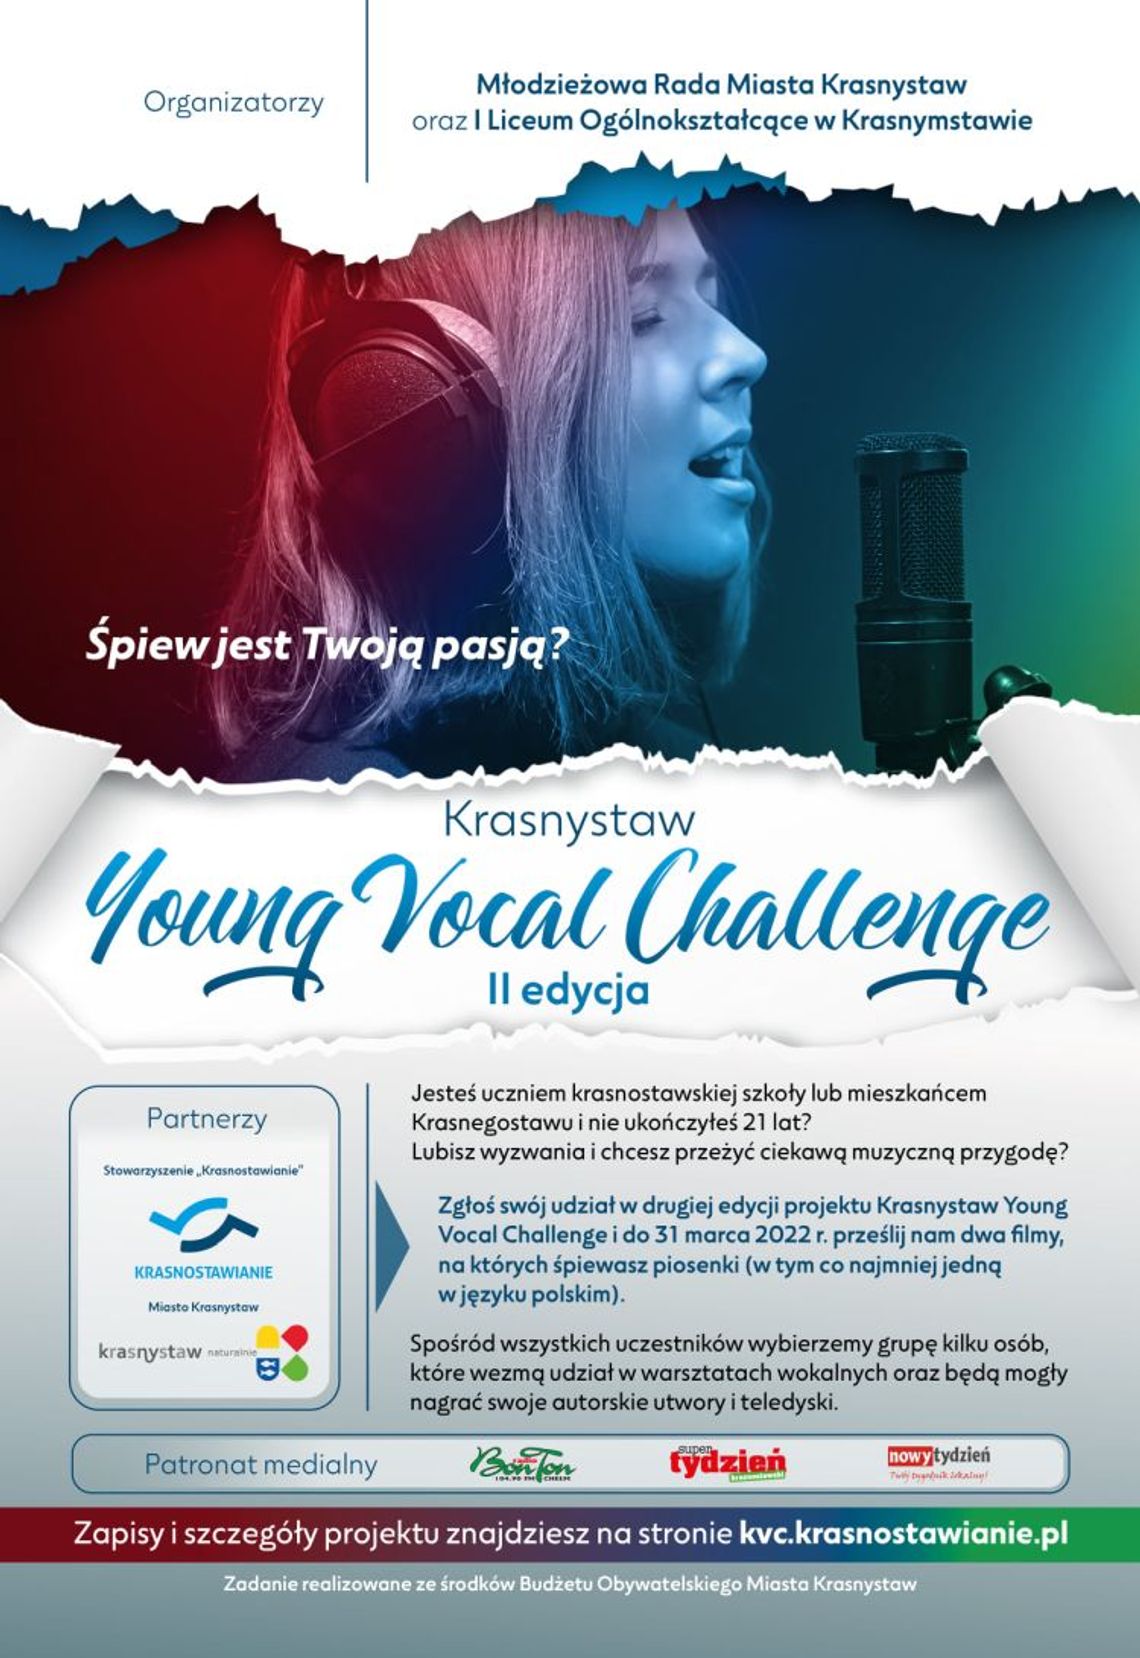 Ruszyła druga edycja Krasnystaw Young Vocal Challenge